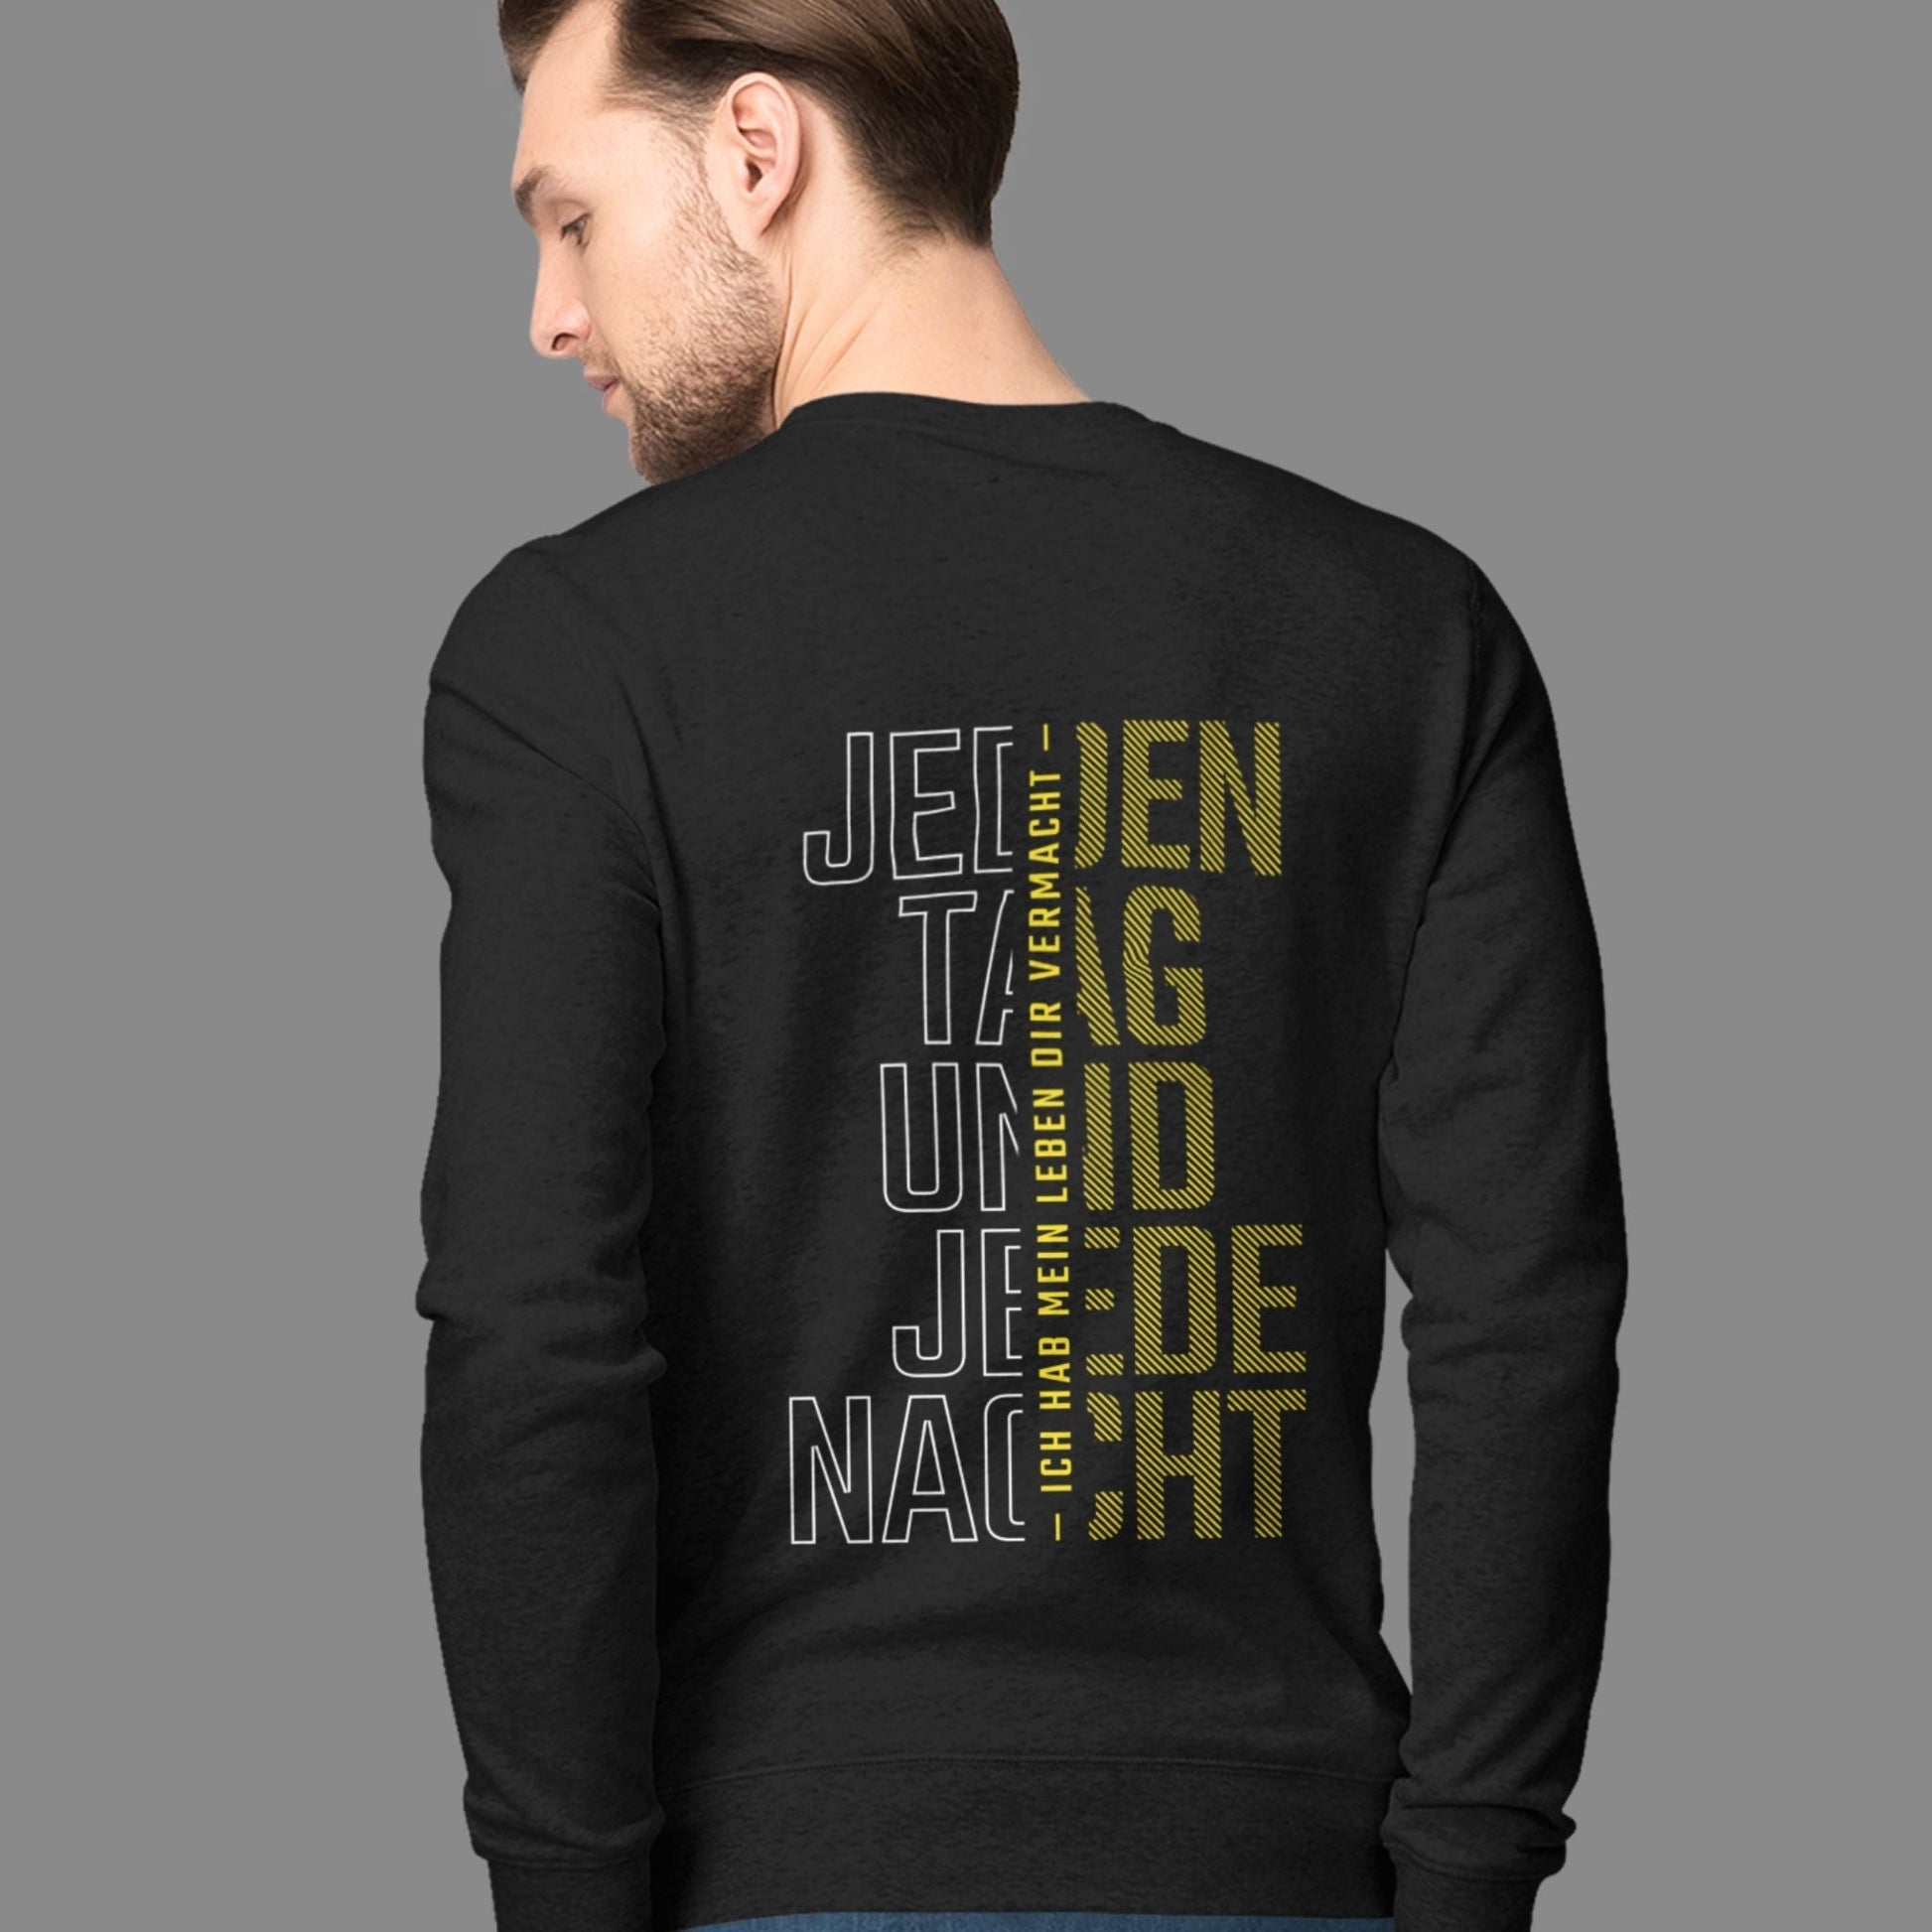 Dortmund jeden Tag und jede Nacht - Unisex Sweatshirt-Fanspirit